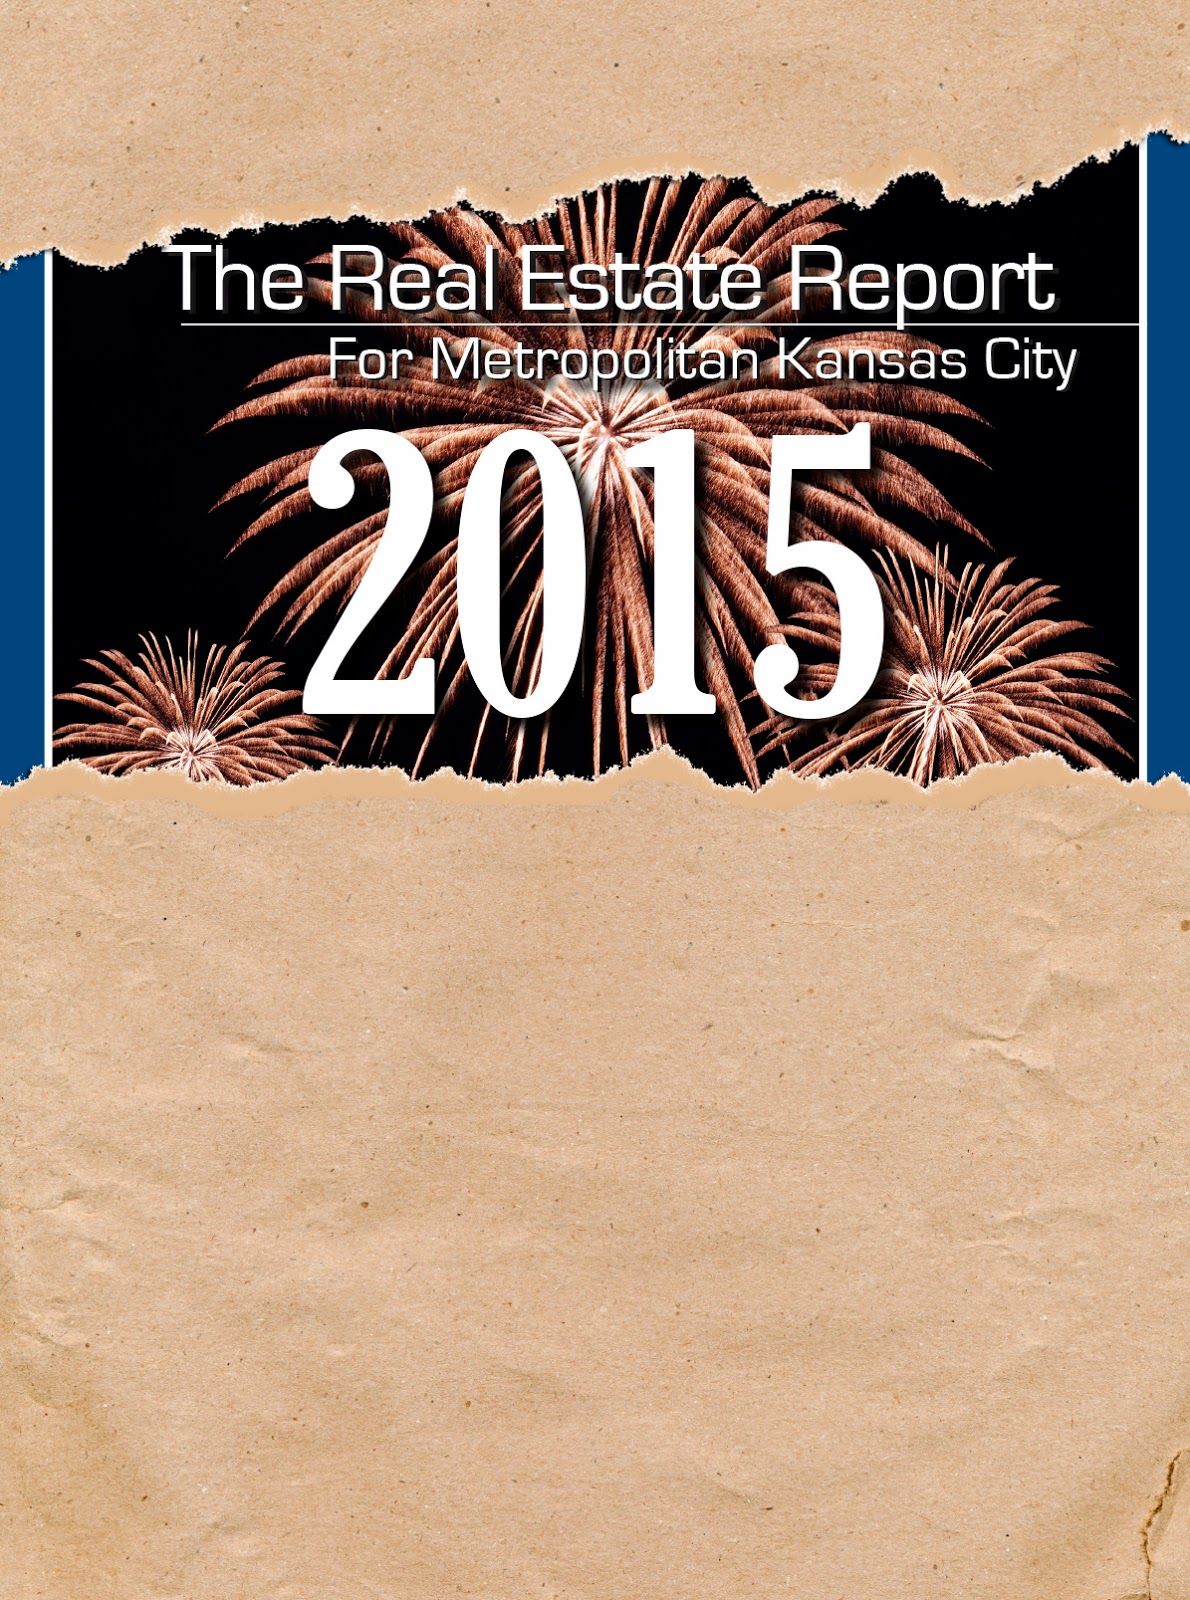 Market Report 2015 Sneak Peak - Day 8 Healthcare